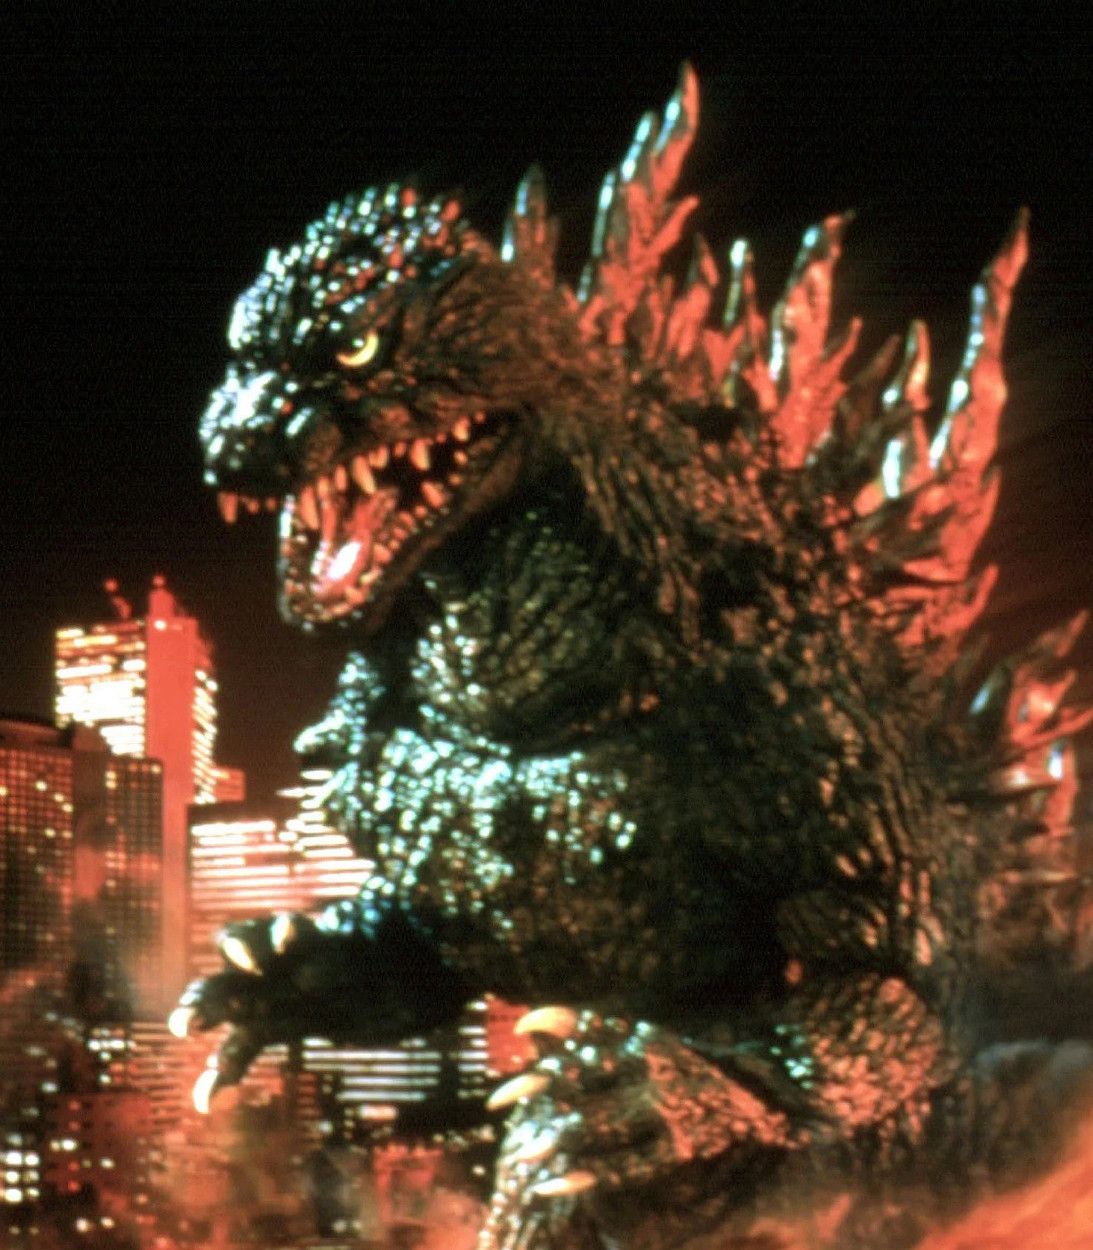 Classic Godzilla movie still